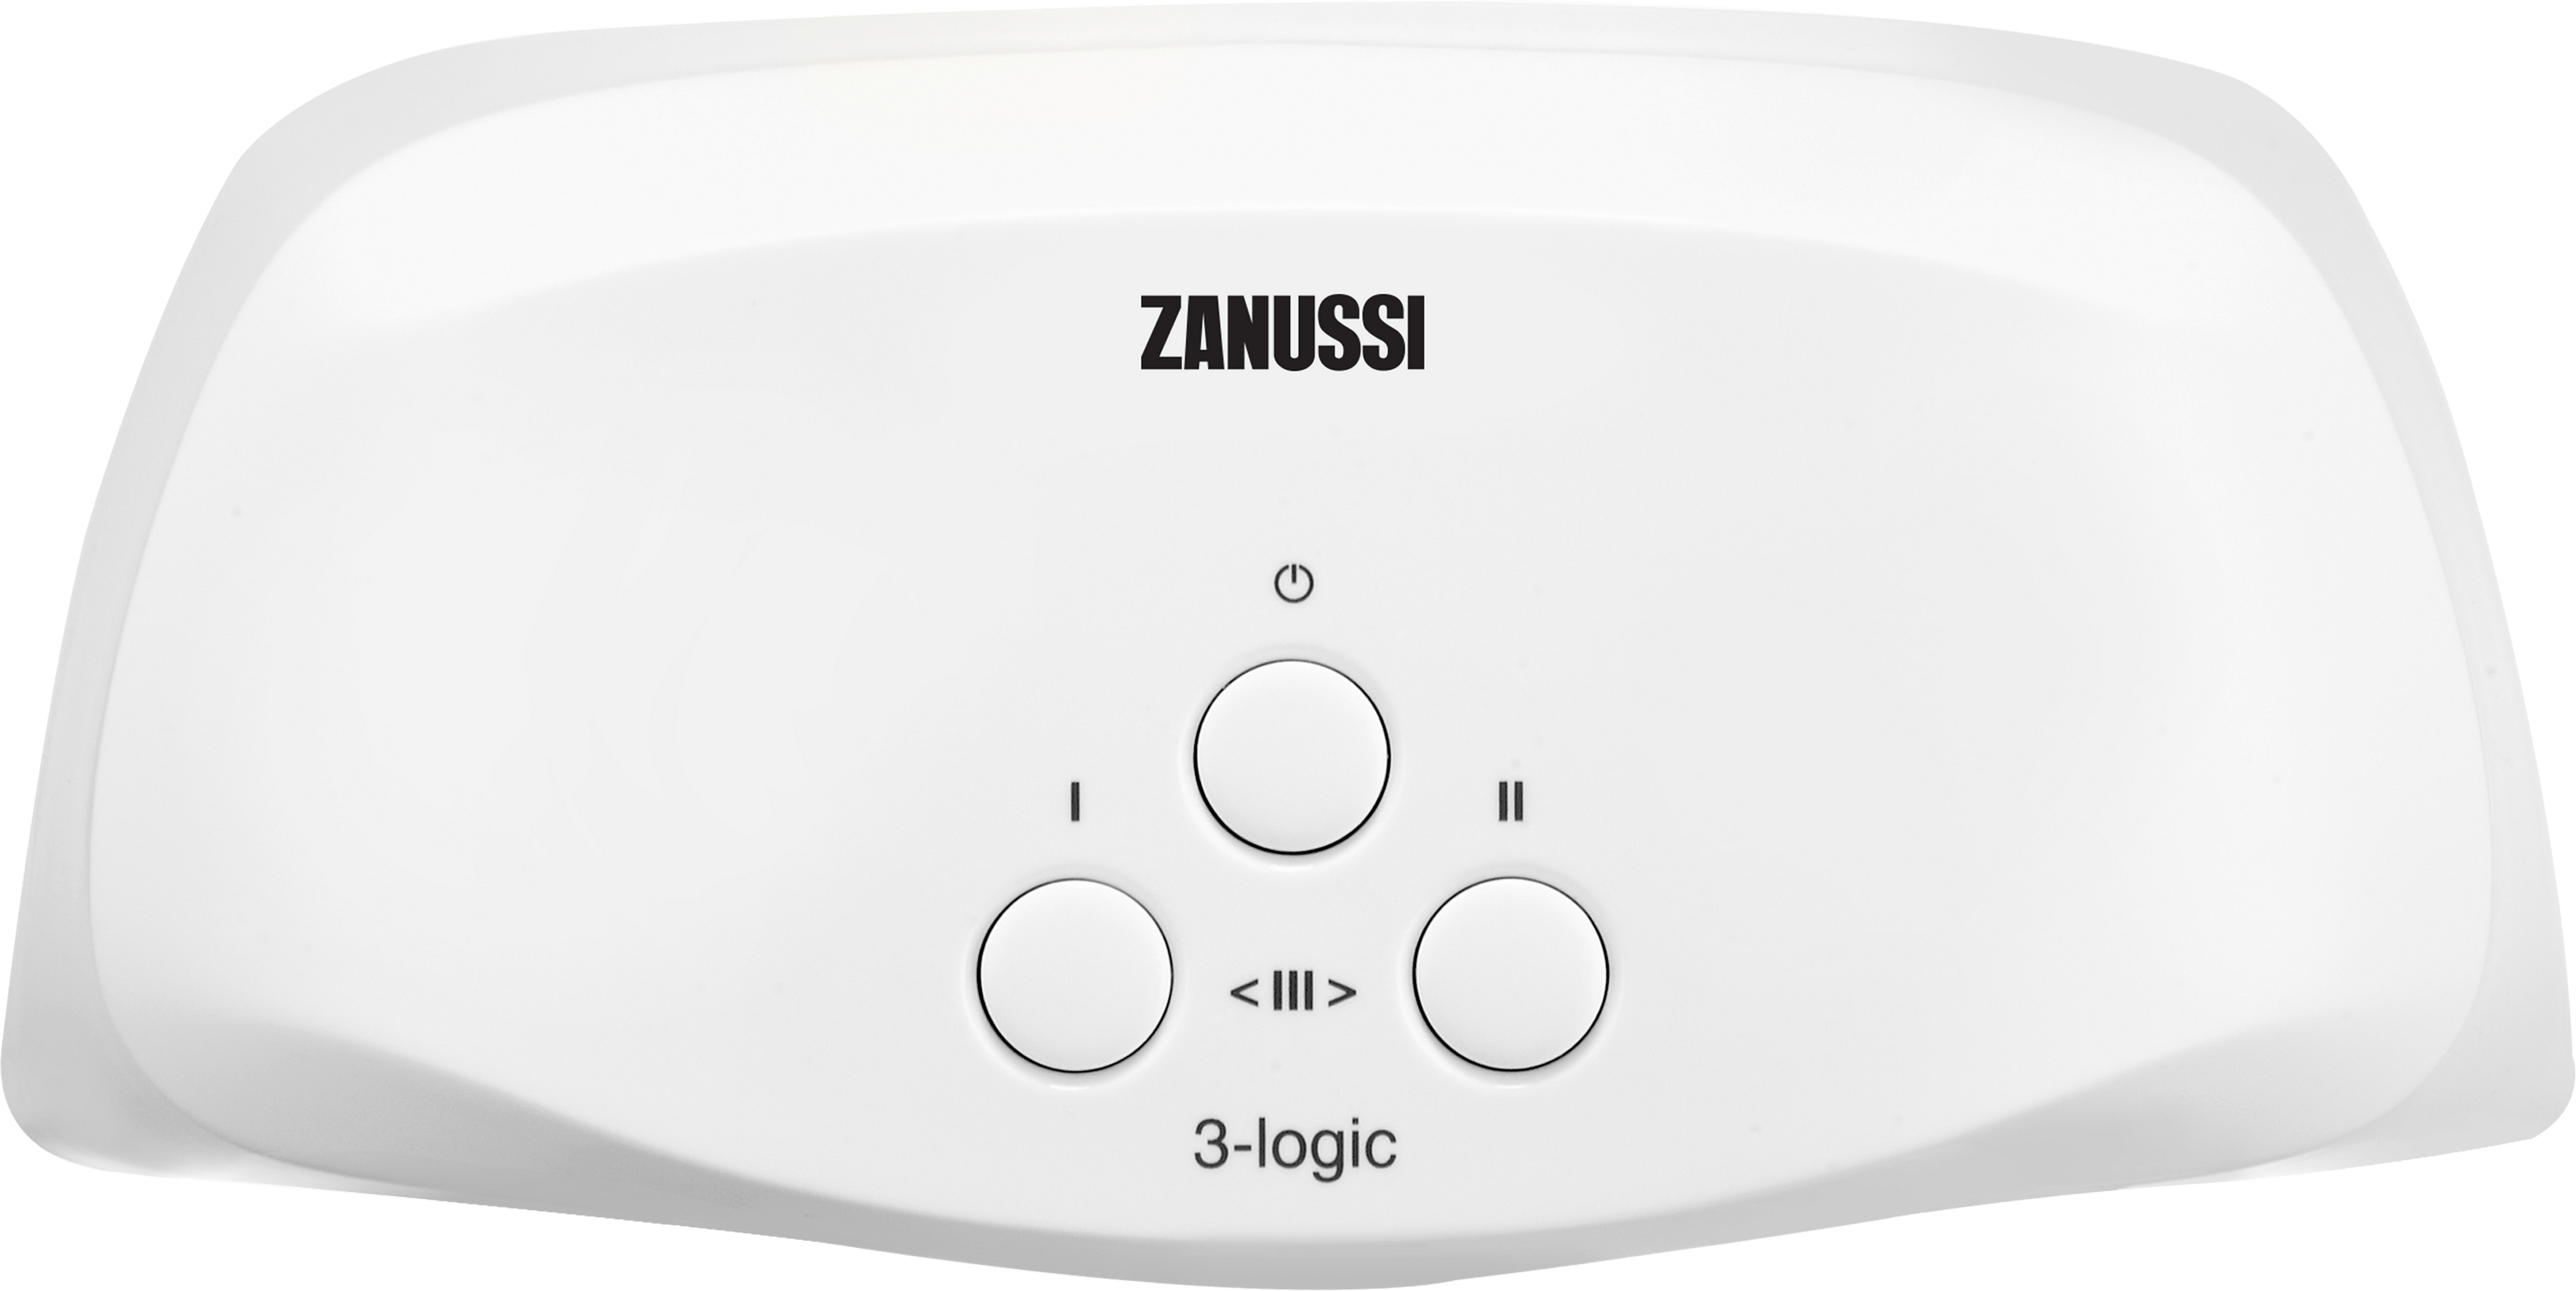 Проточный водонагреватель Zanussi 3-logic T (3,5 кВт) в интернет-магазине, главное фото